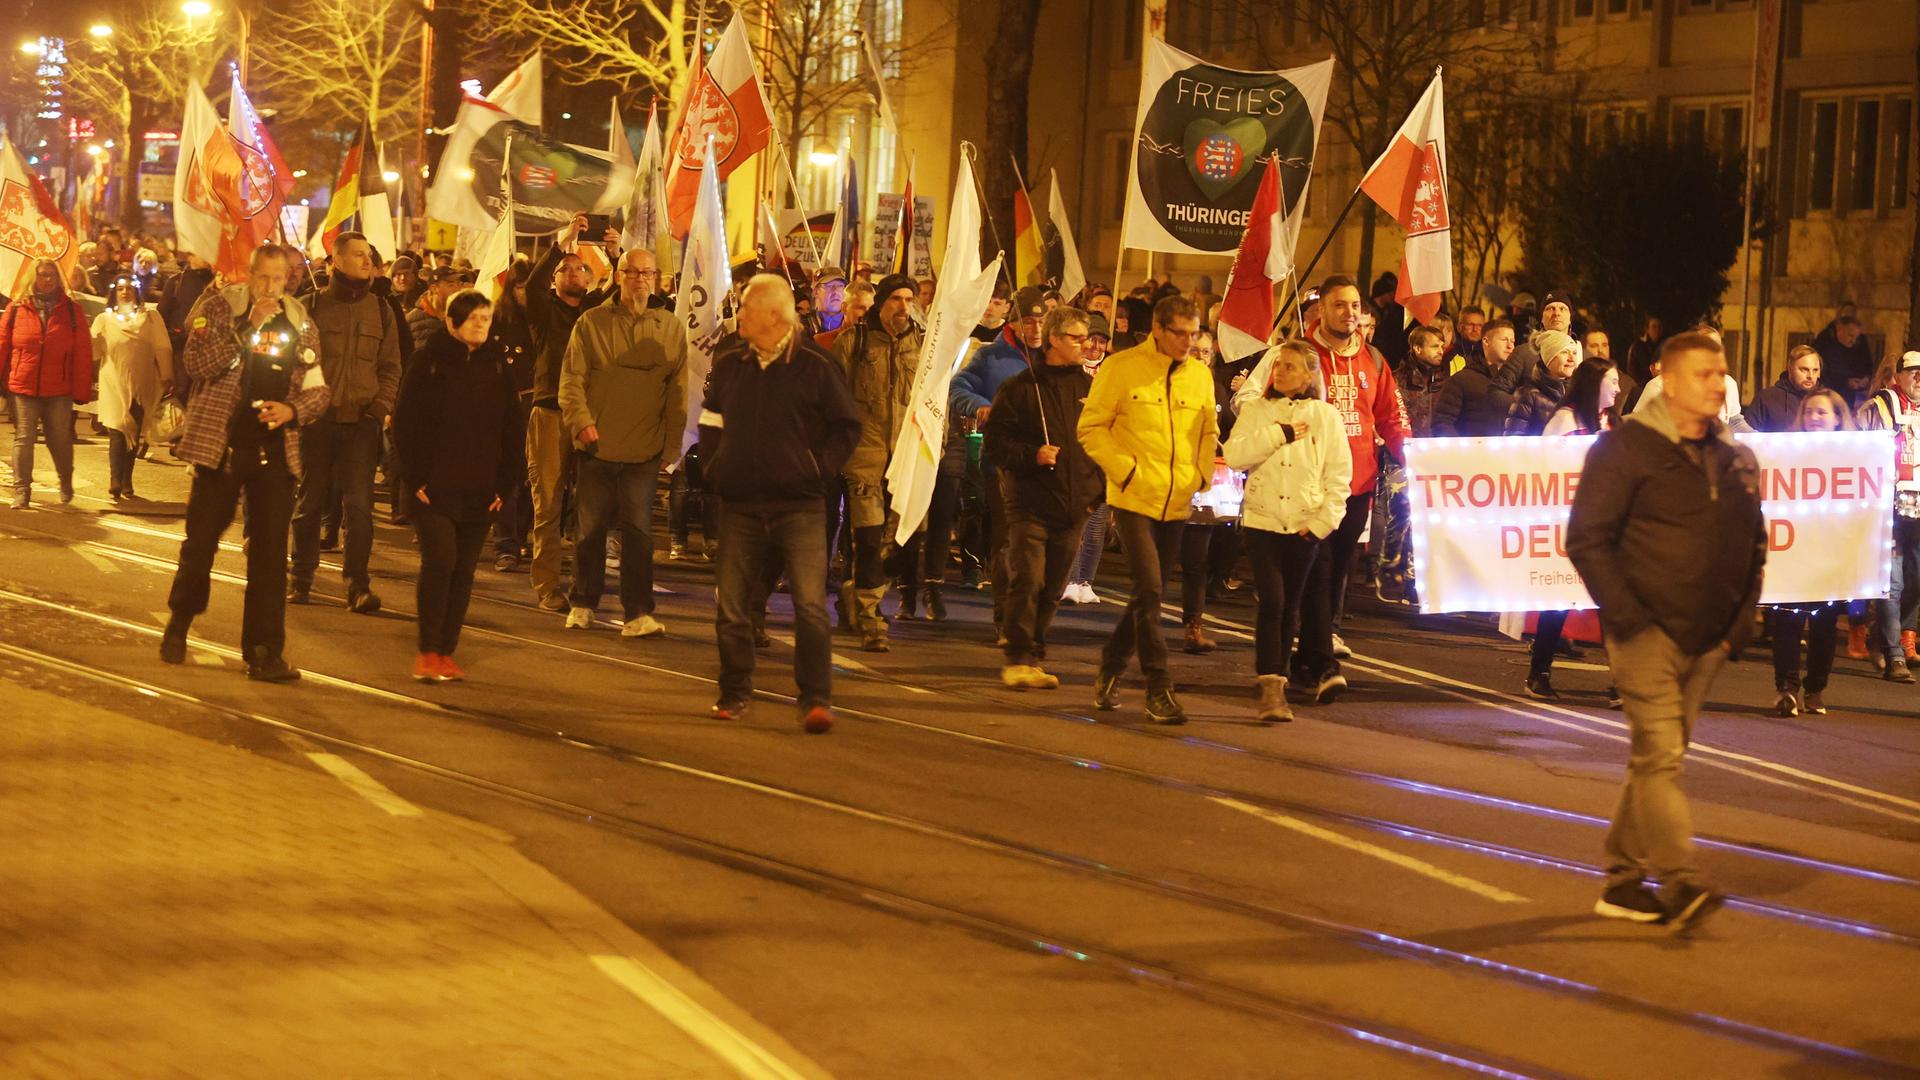 Teilnehmer einer Demonstration laufen durch die Innenstadt von Erfurt. Sie tragen Transparente.